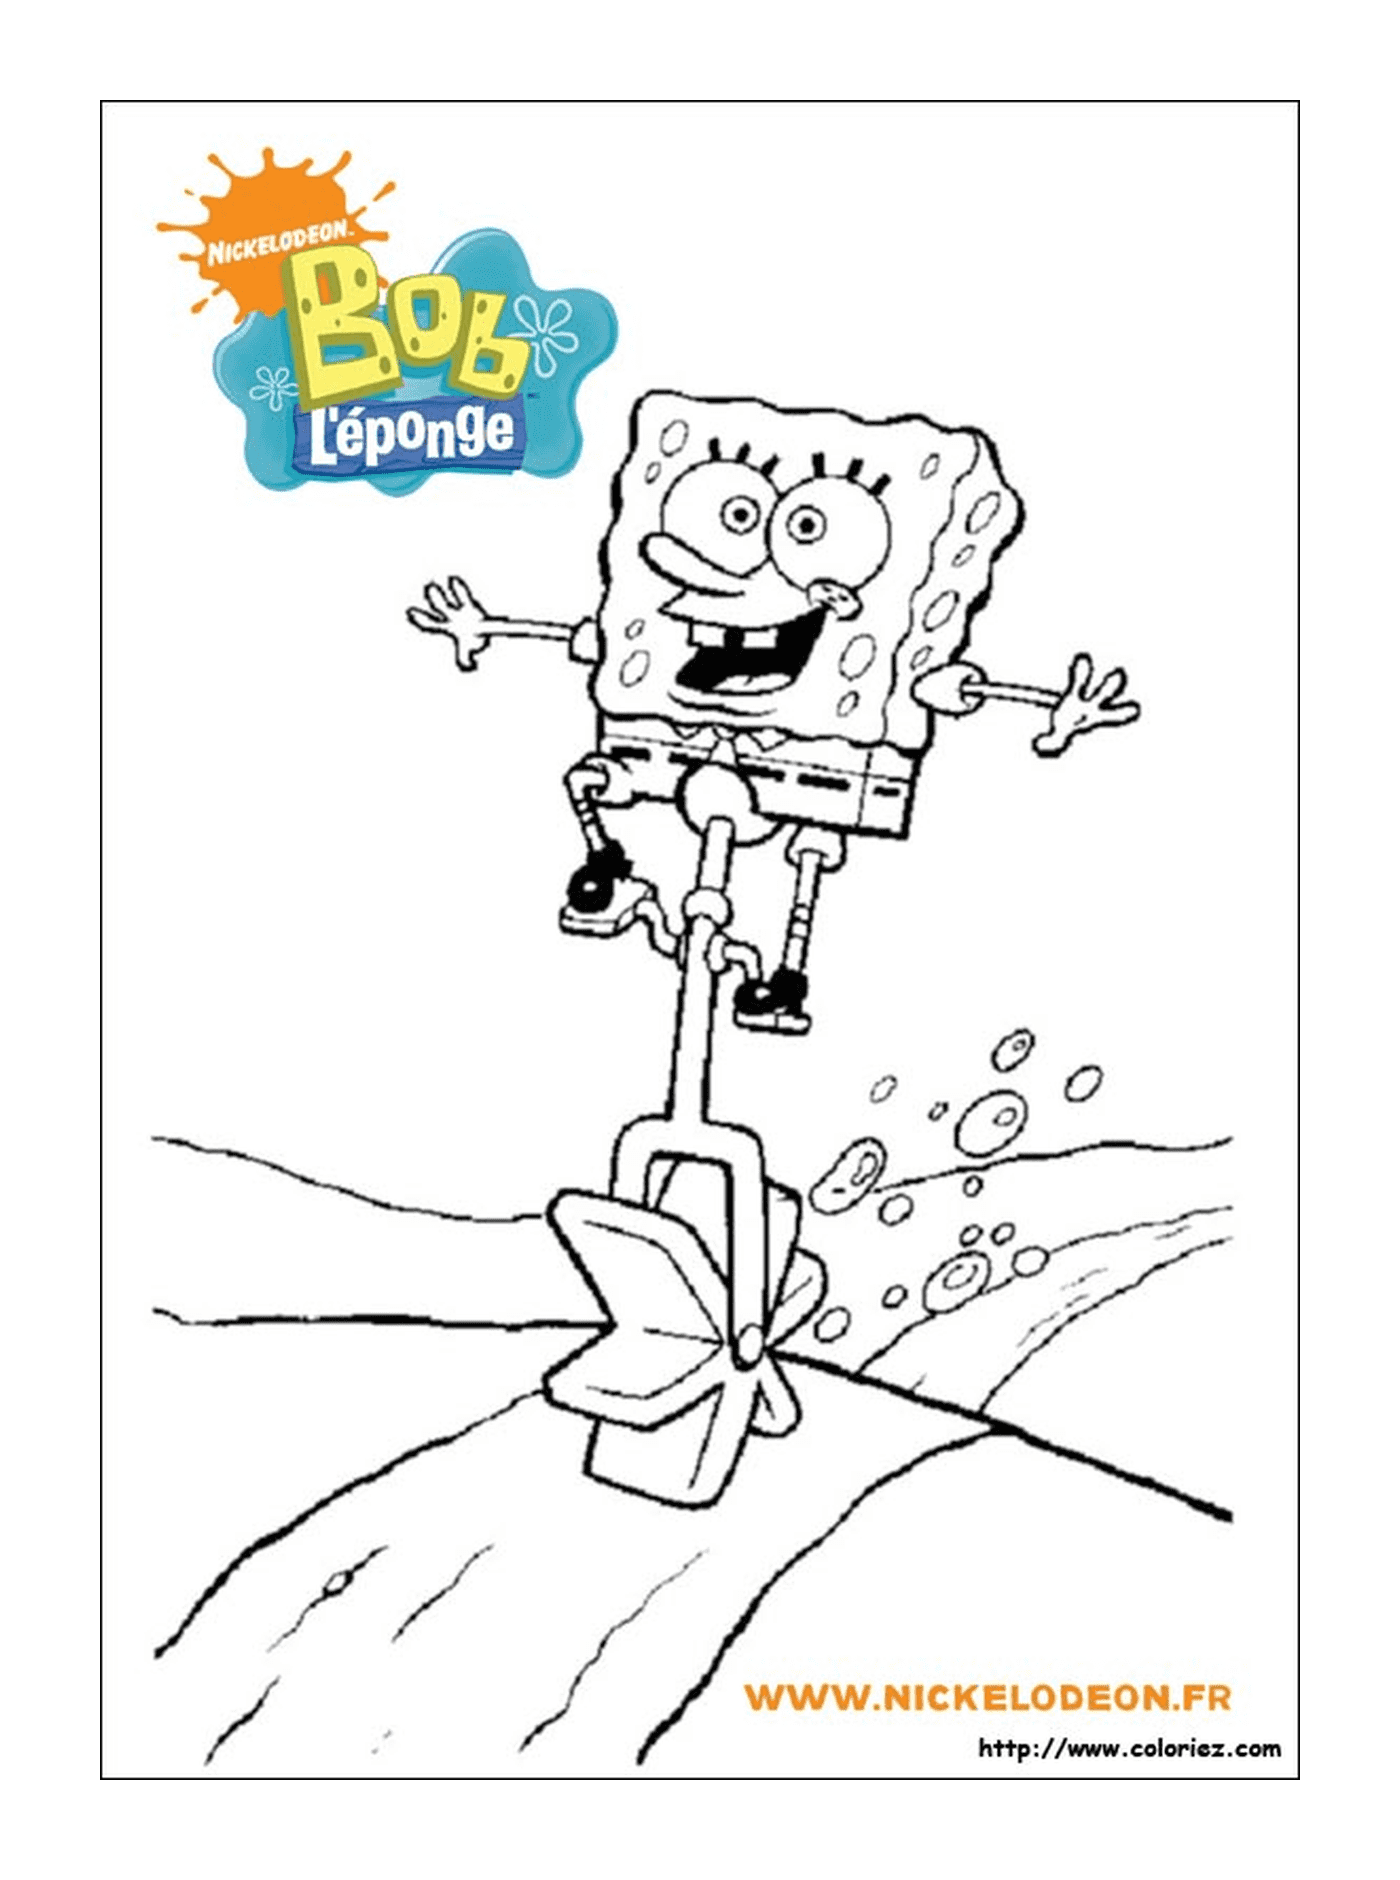  Bob der Schwamm springt über einen Mülleimer 